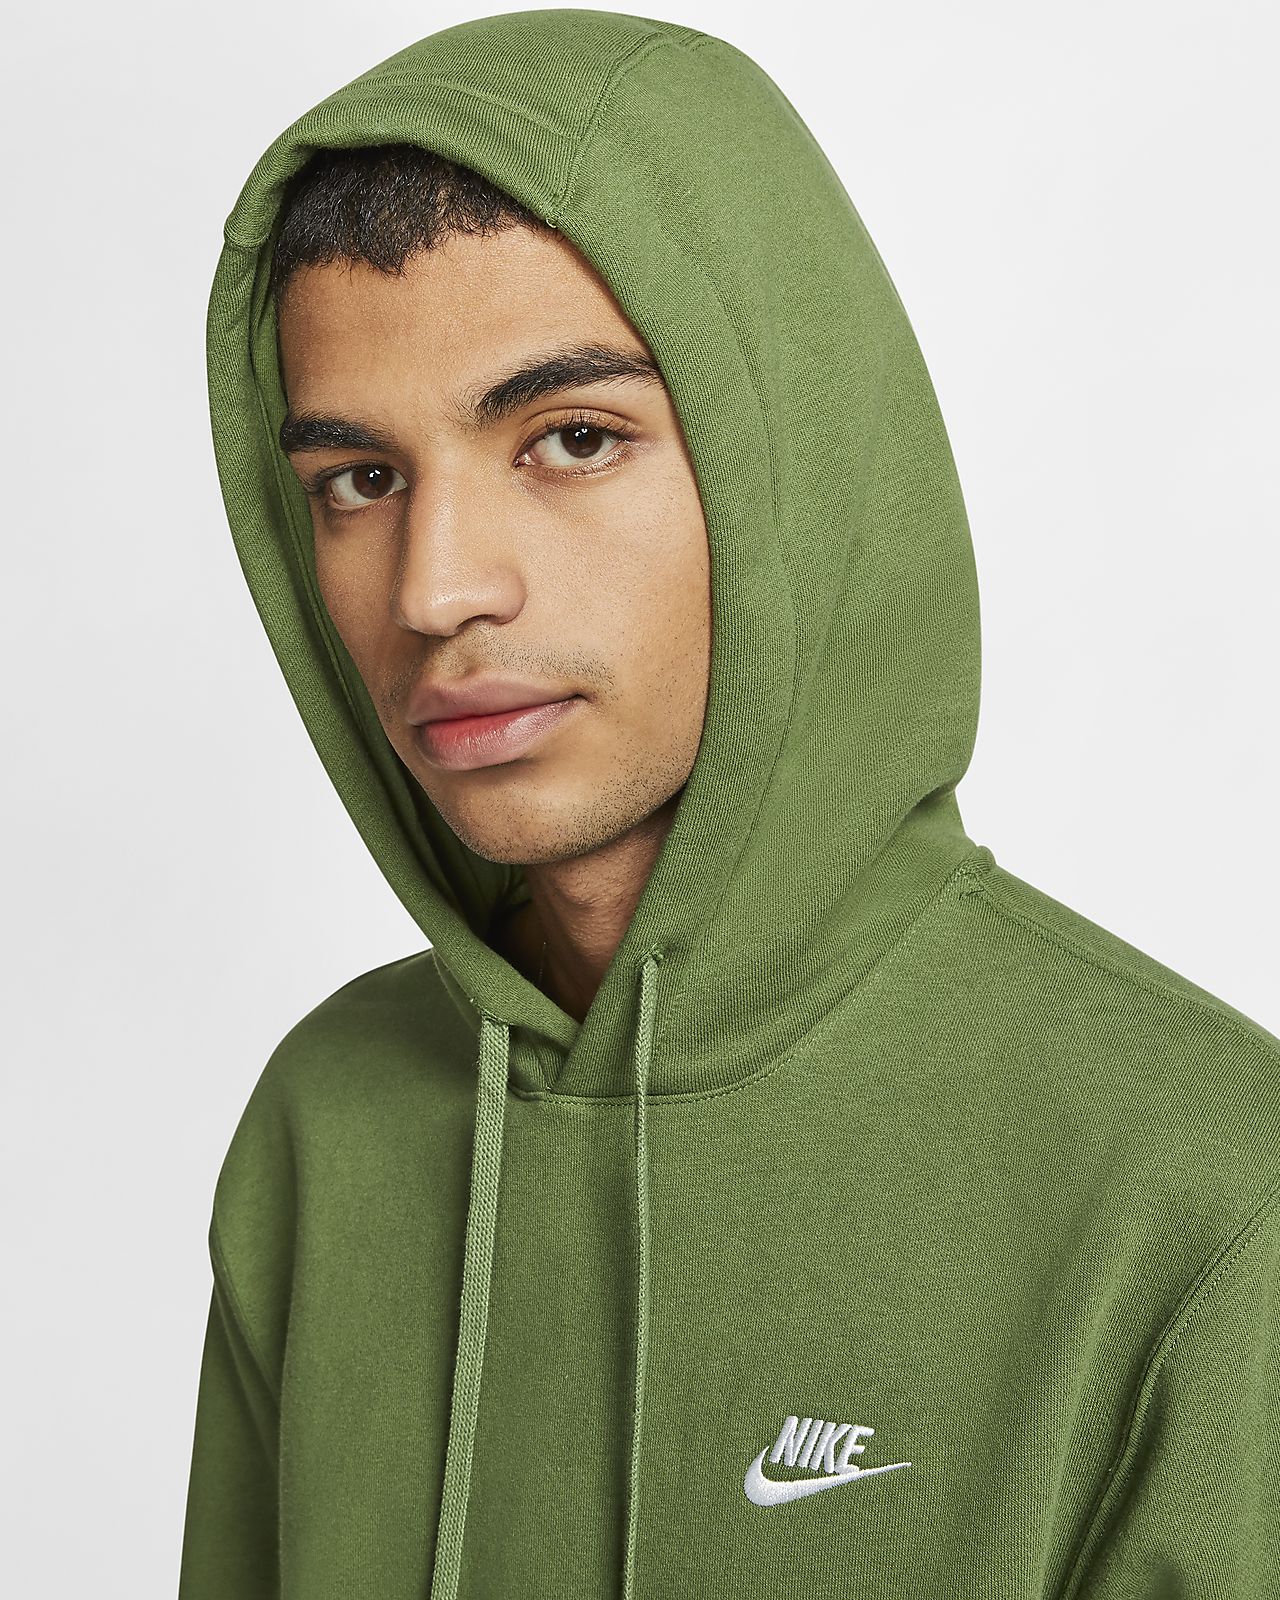 treeline green nike hoodie